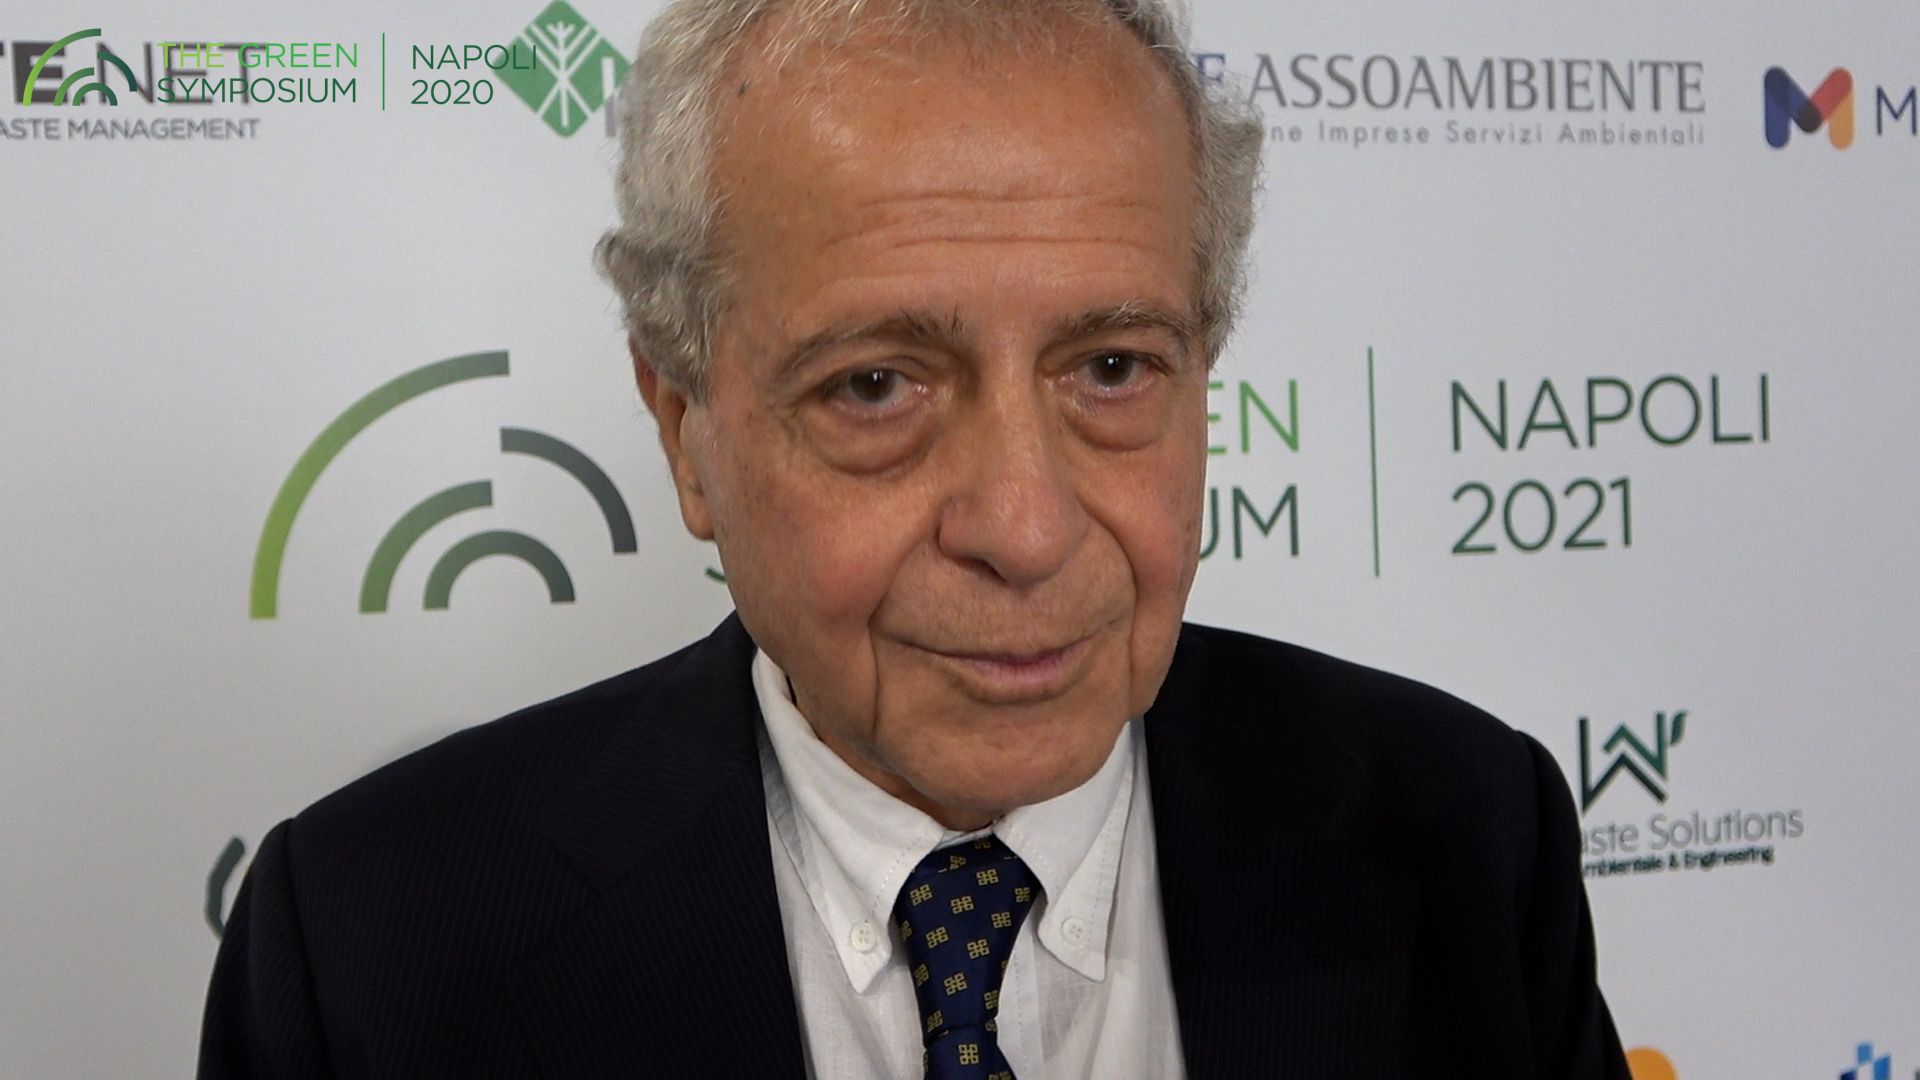 Green Symposium 2021: intervista a Enrico Morigi - Albo Gestori Ambientali